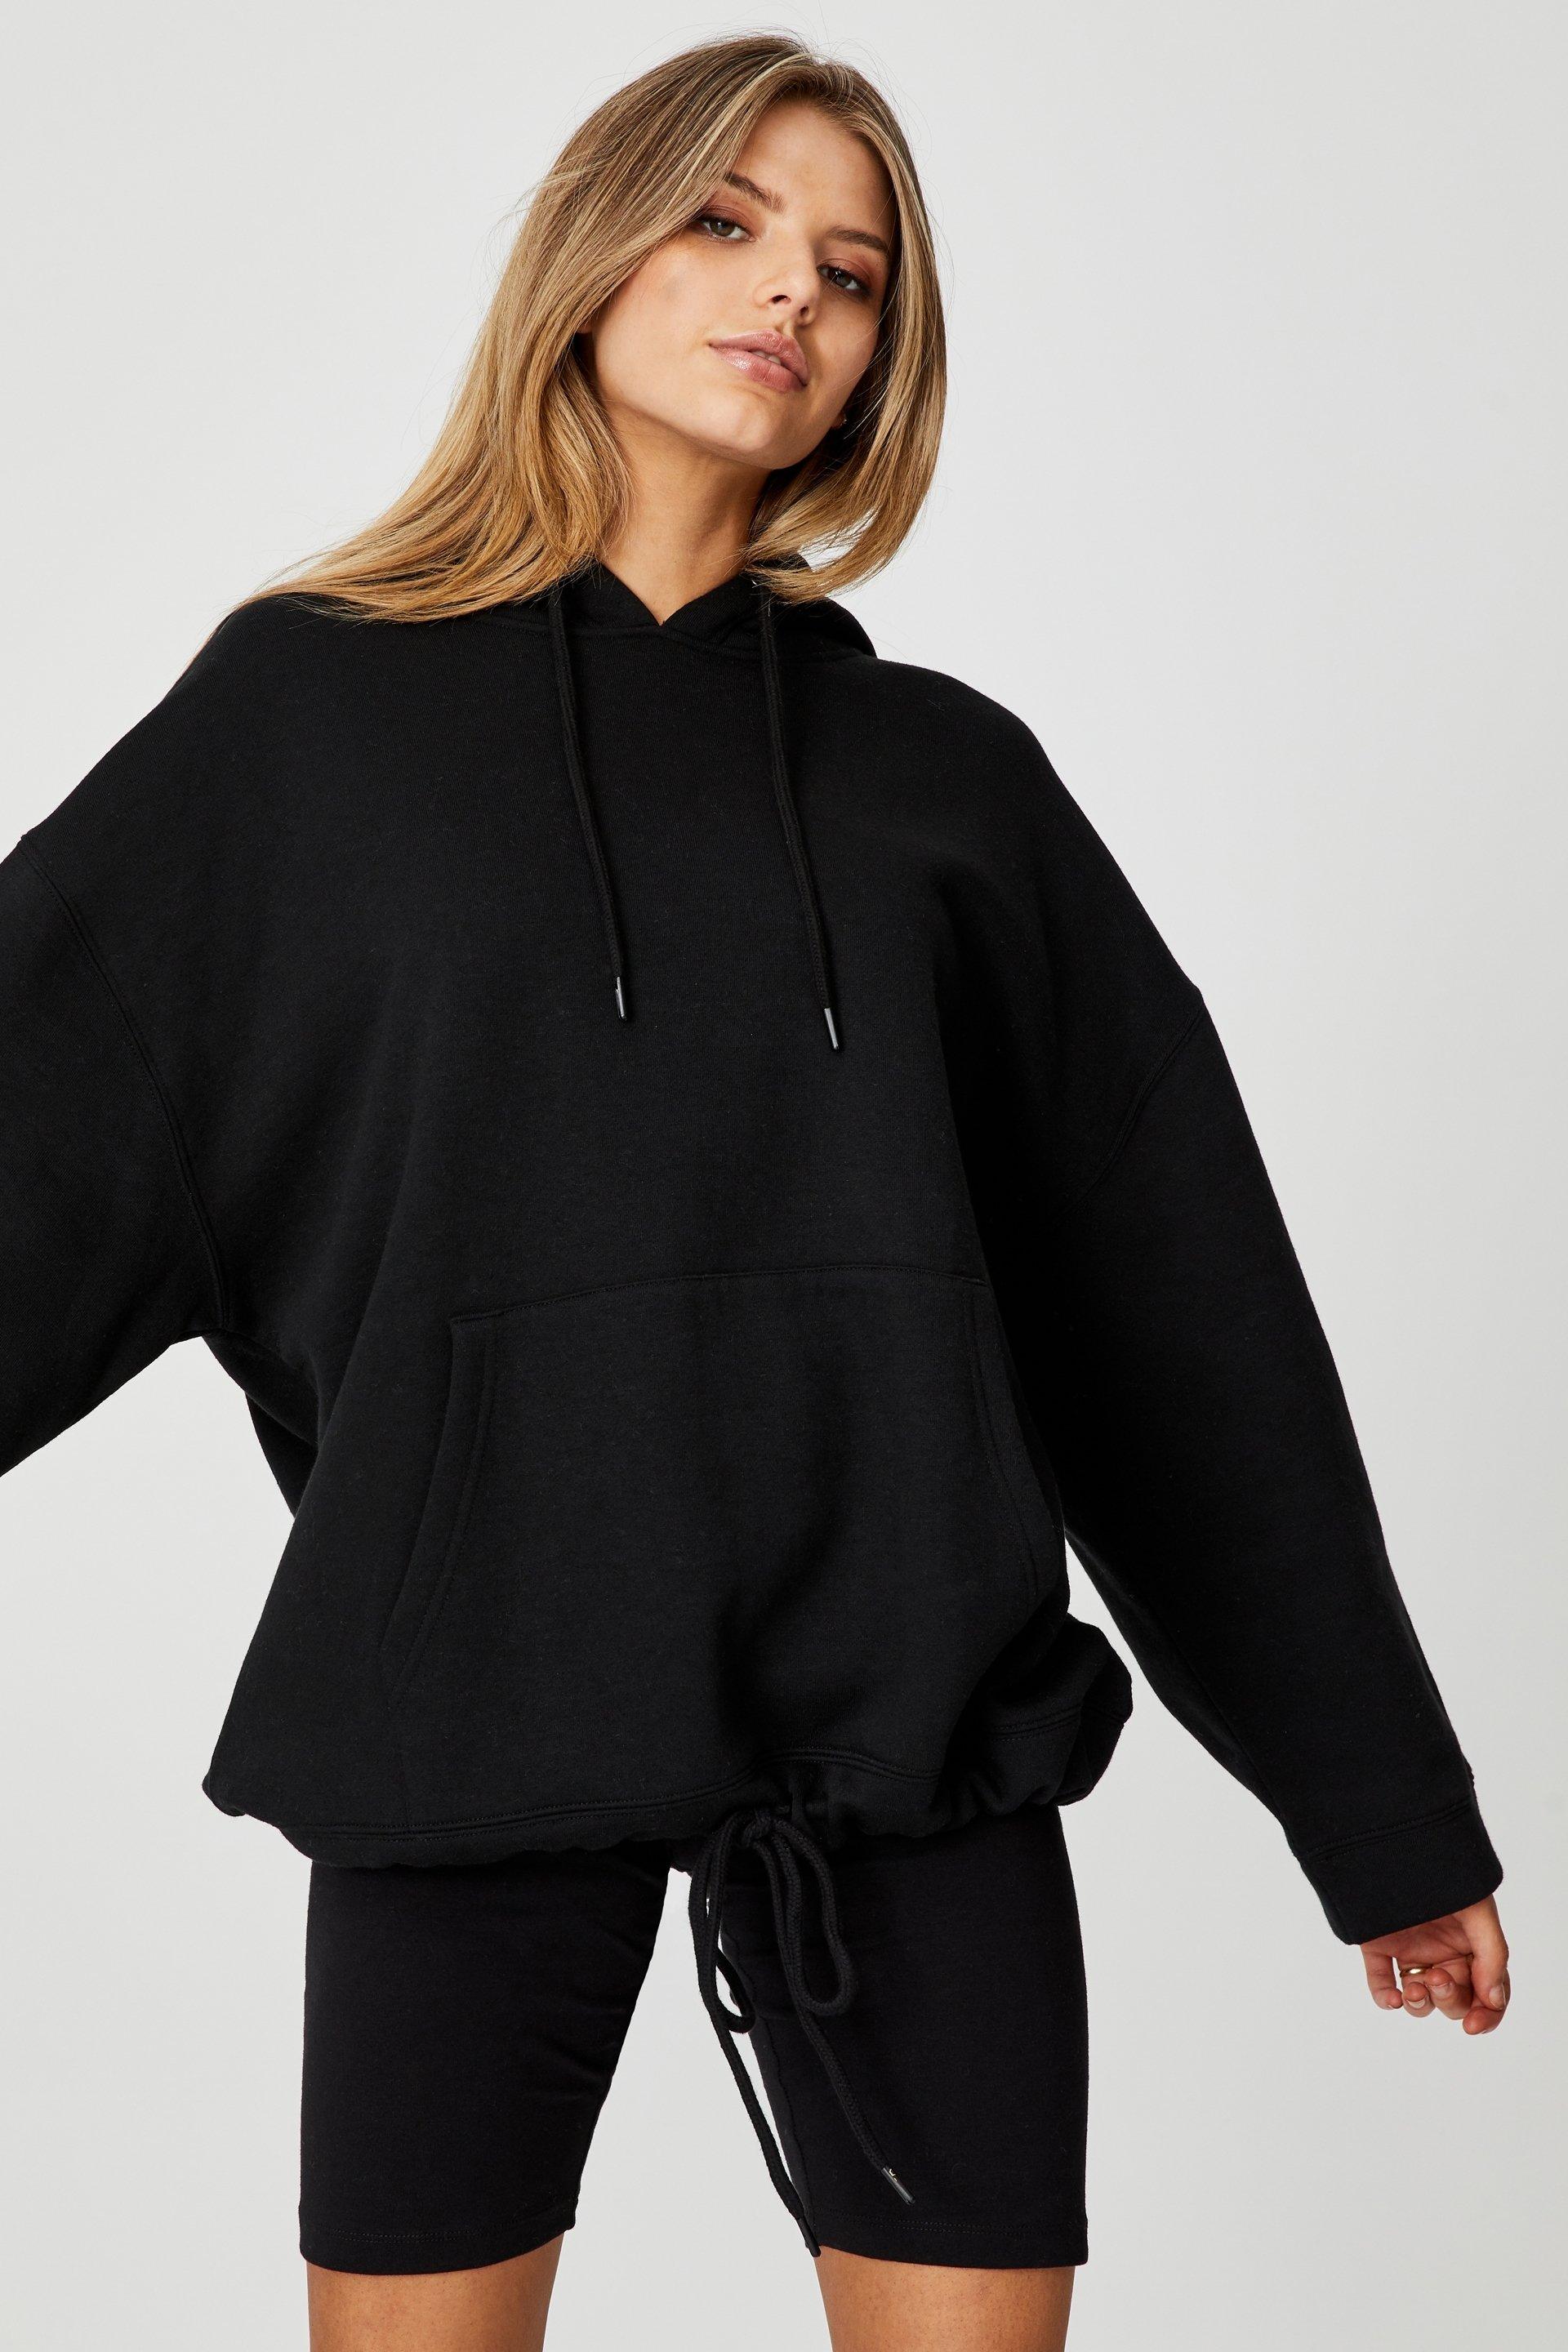 Super oversized hoodie - black Factorie Hoodies & Sweats | Superbalist.com